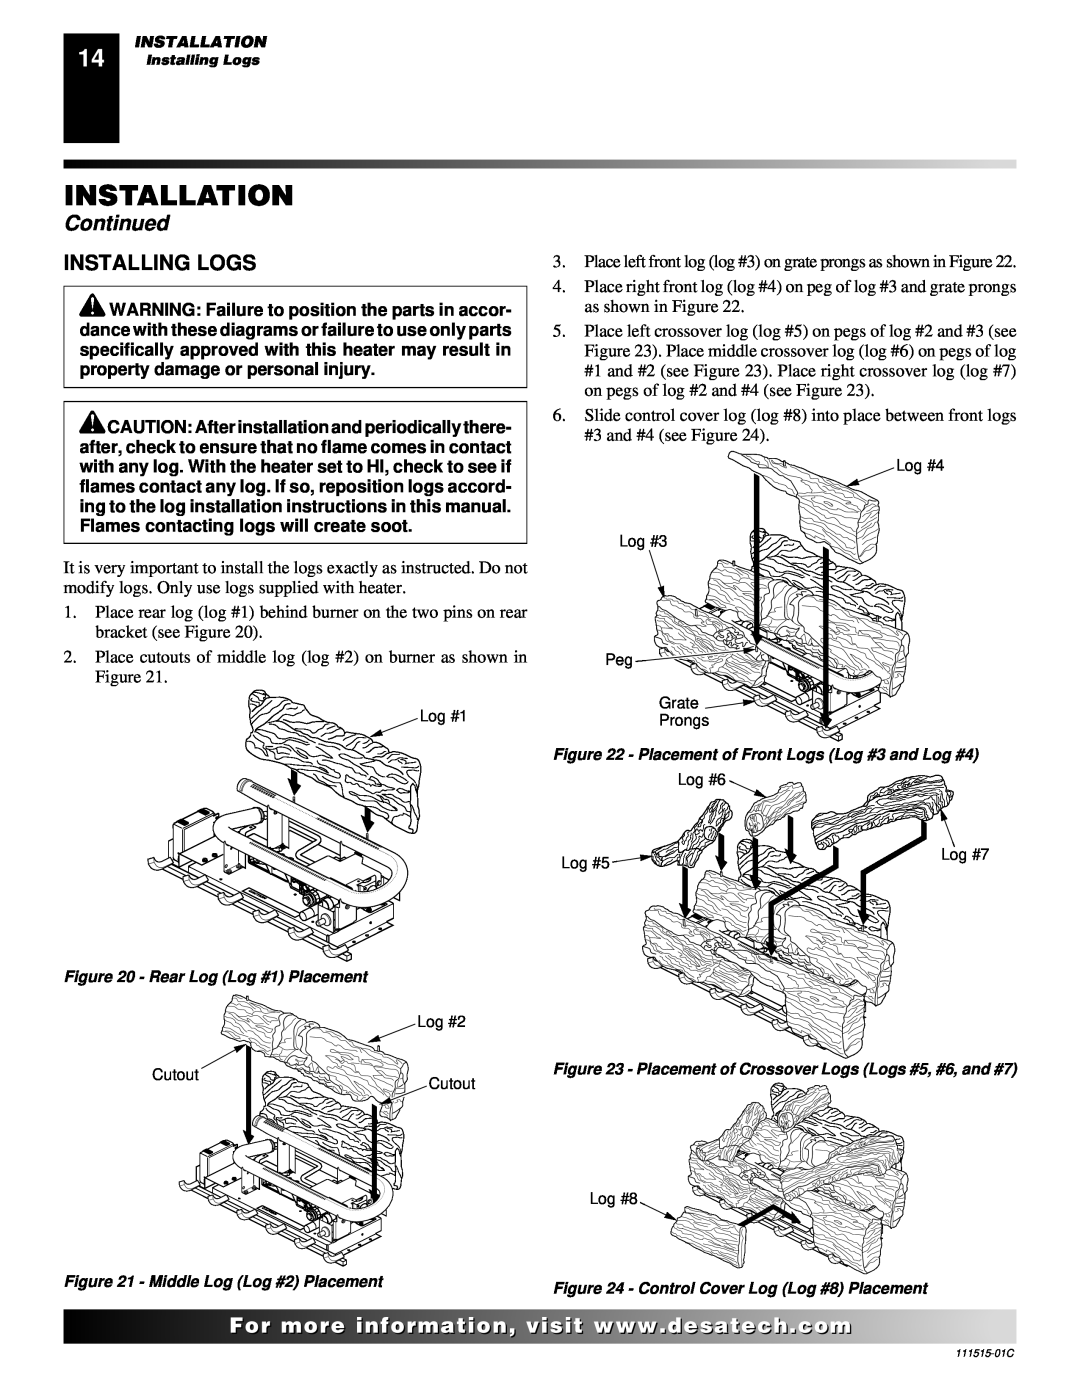 Desa LDL3924PR, LDL3930PR, LDL3930NR installation manual Installing Logs, Installation, Continued 